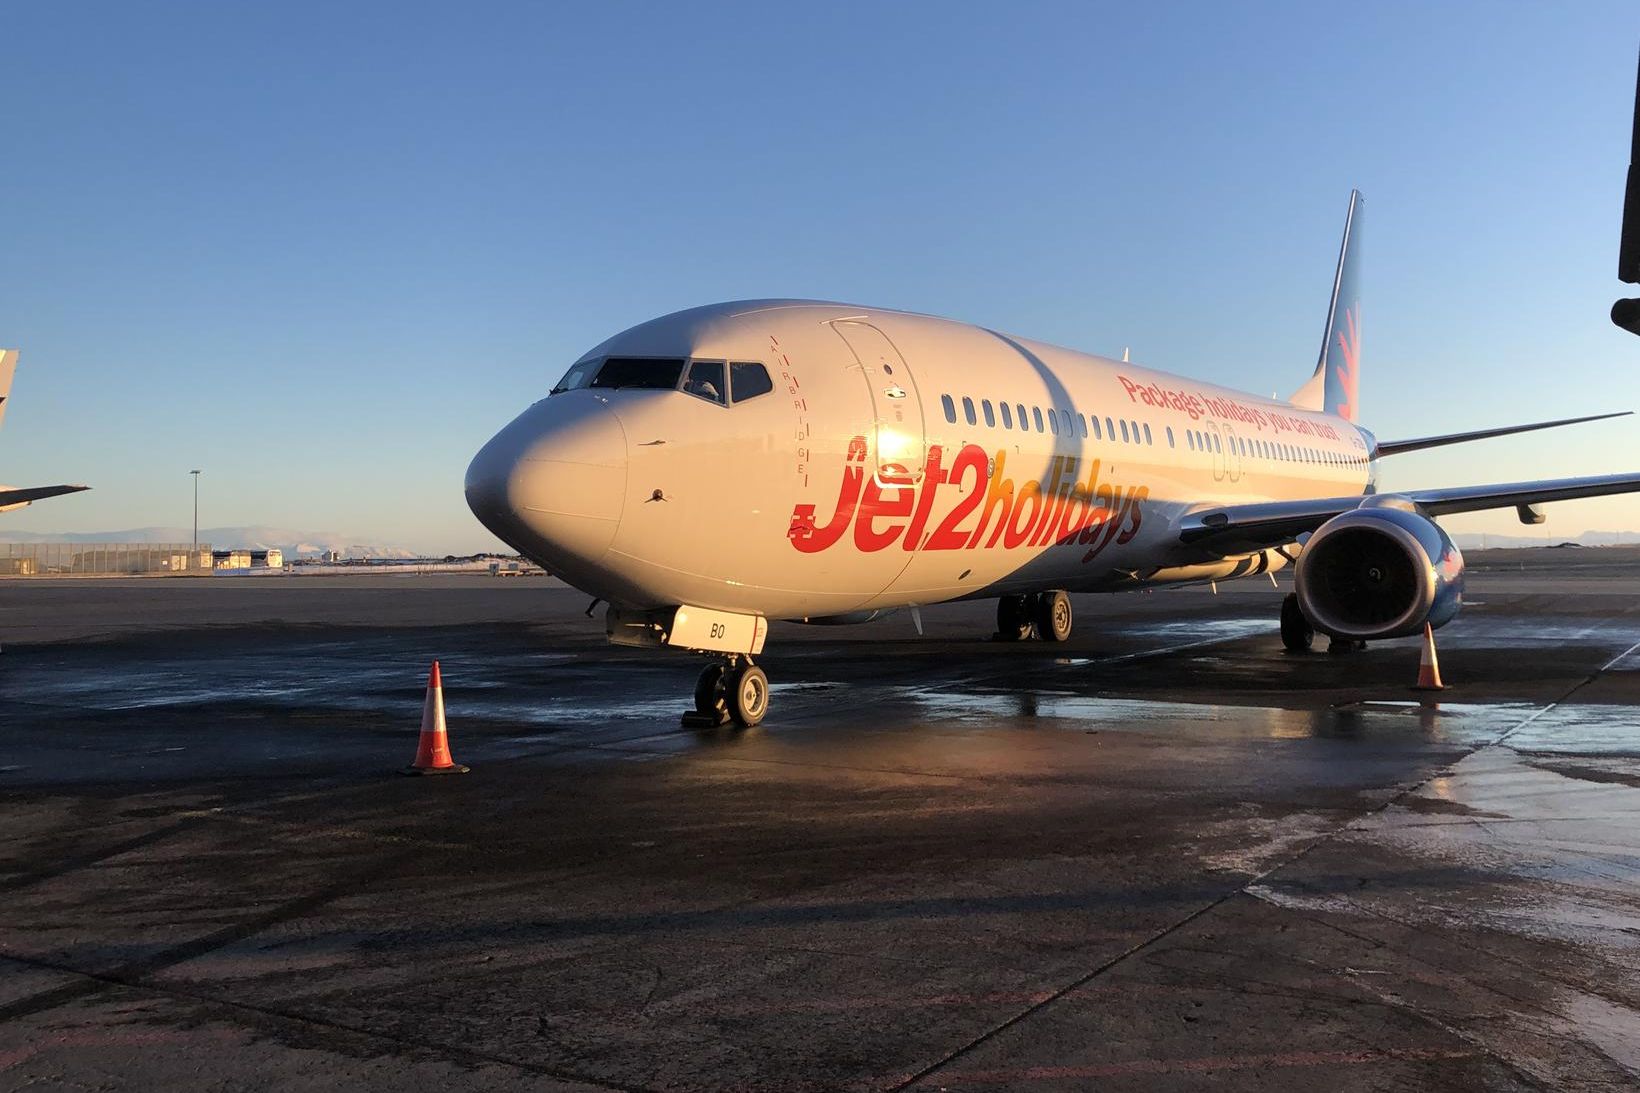 Frá fyrsta flugi Jet2.com til Keflavíkur 7. febrúar árið 2019.